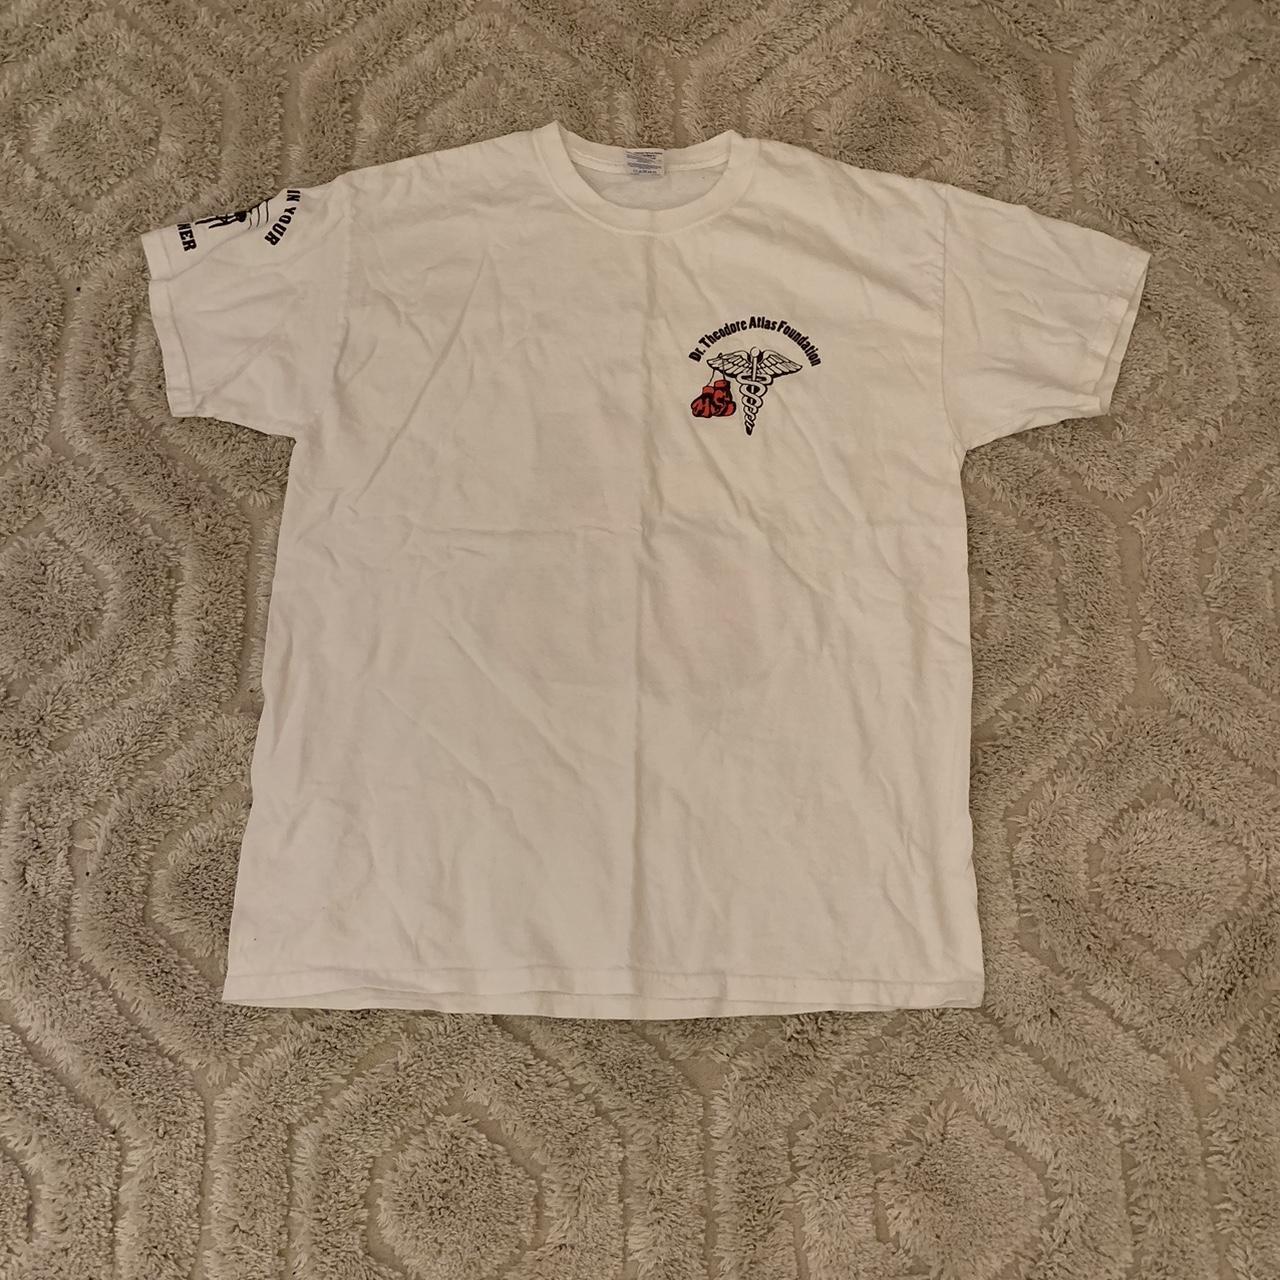 Gildan Men's White T-shirt